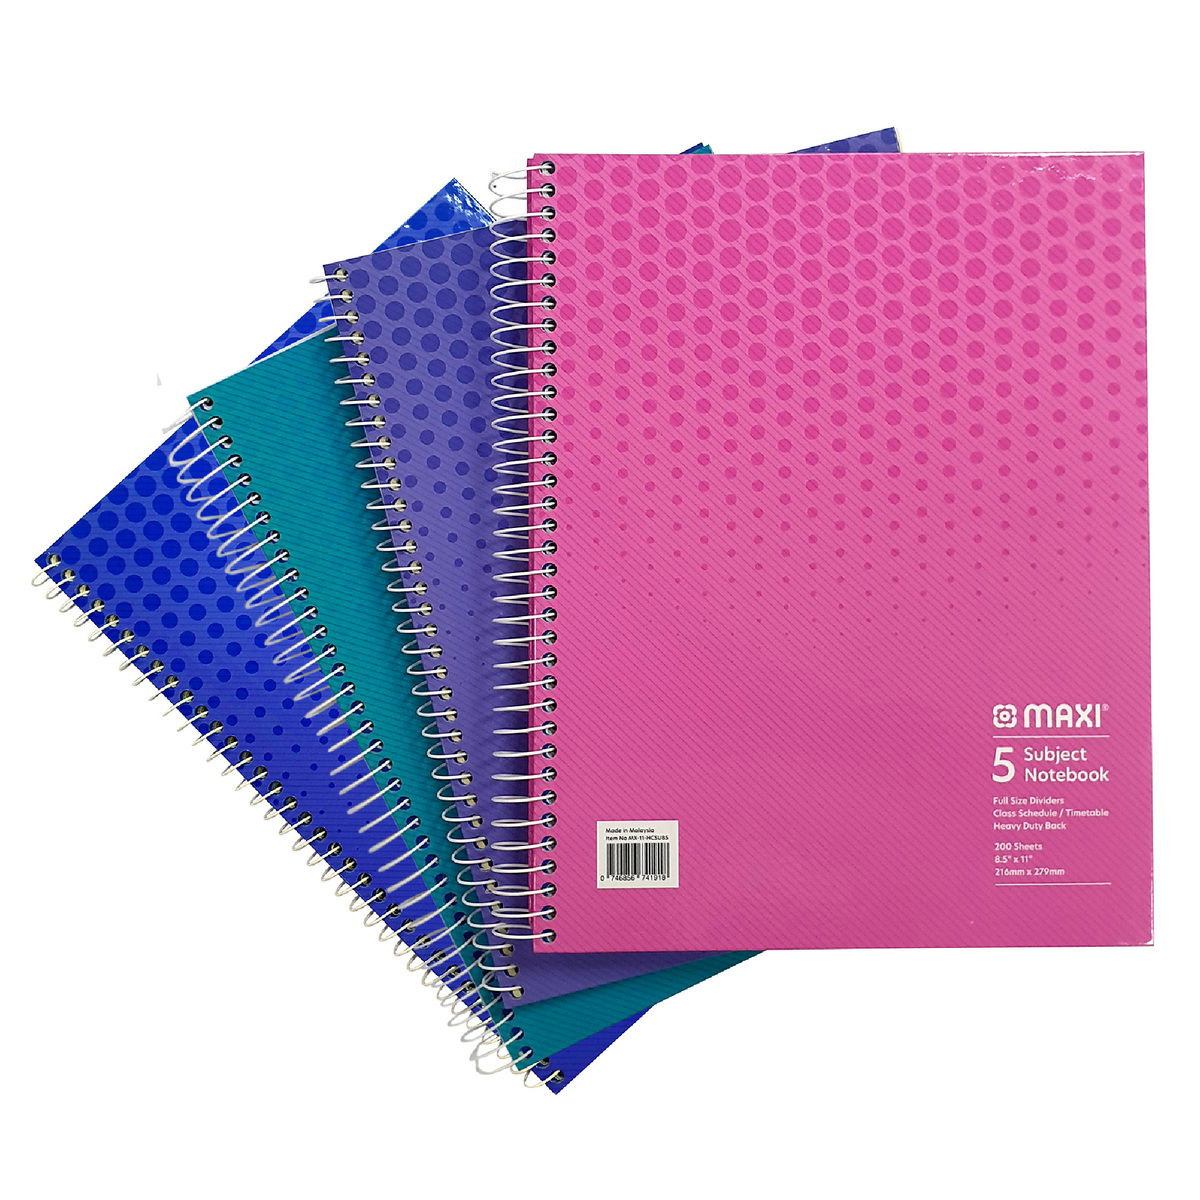 ماكسي مفكرة ورقية بسلك بغطاء صلب 5 موضوعات ، 11 بوصة ×8.5 بوصة ، 200 ورقة ، ألوان متنوعة ، MX-11-HCSUB5